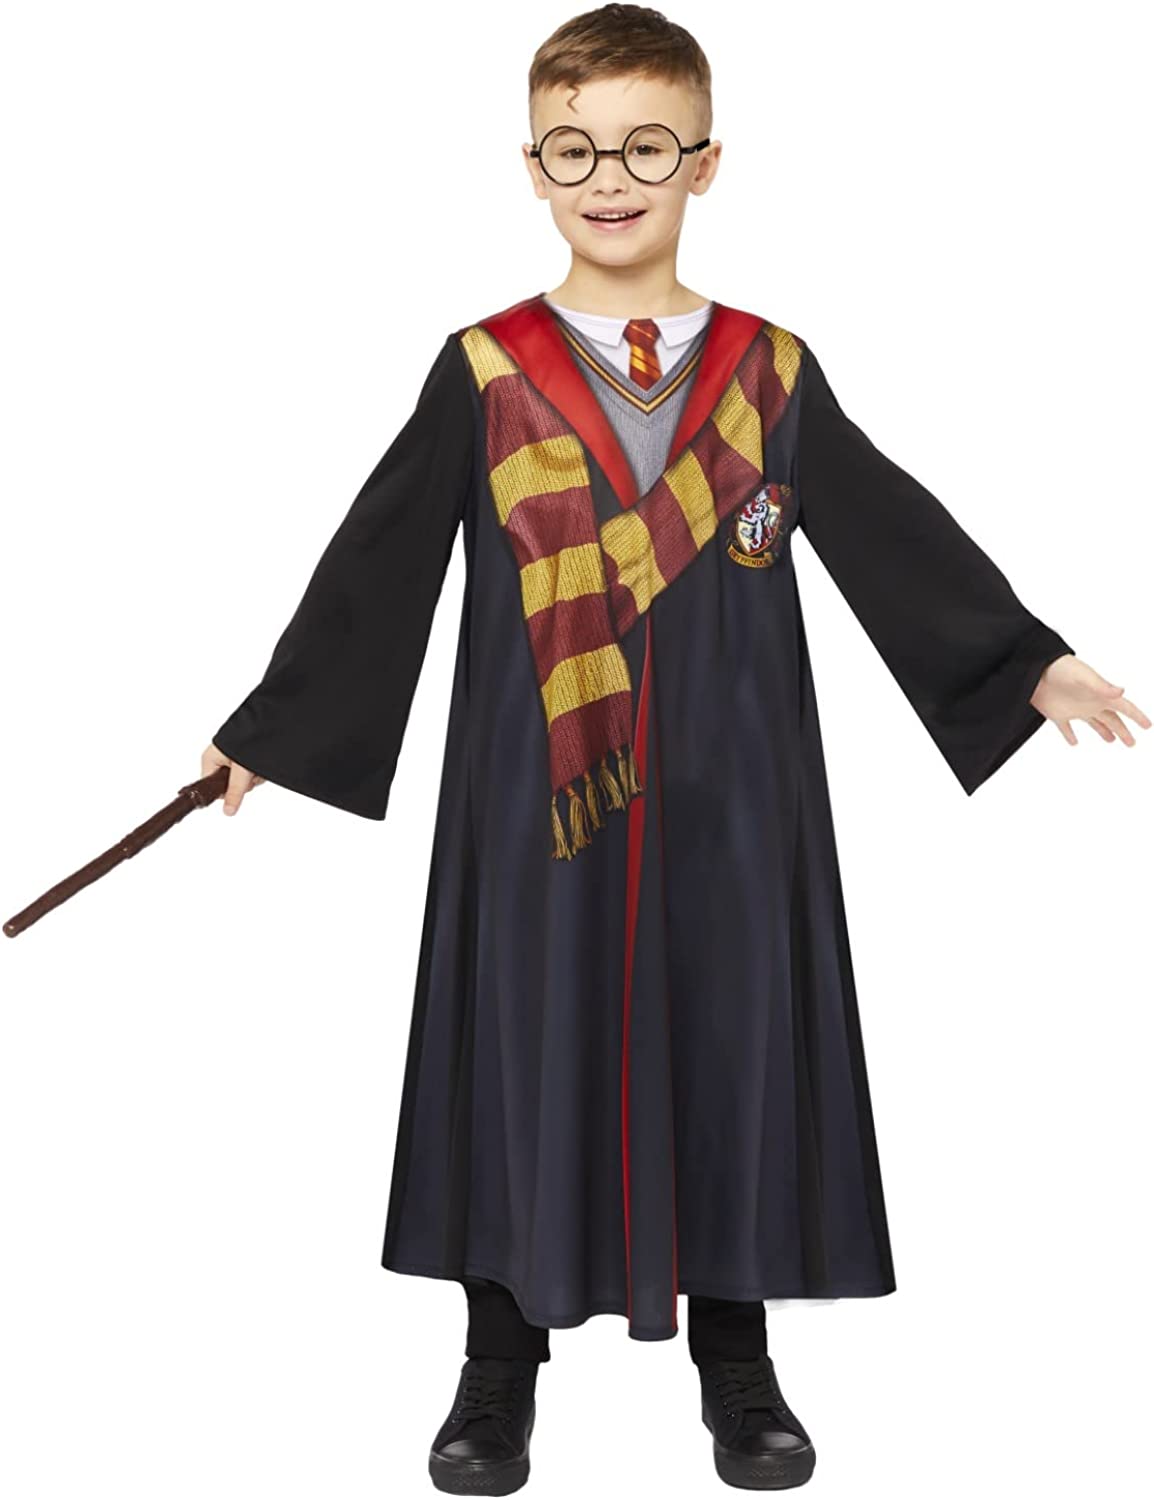 Costume da bambino con licenza ufficiale Harry Potter Deluxe